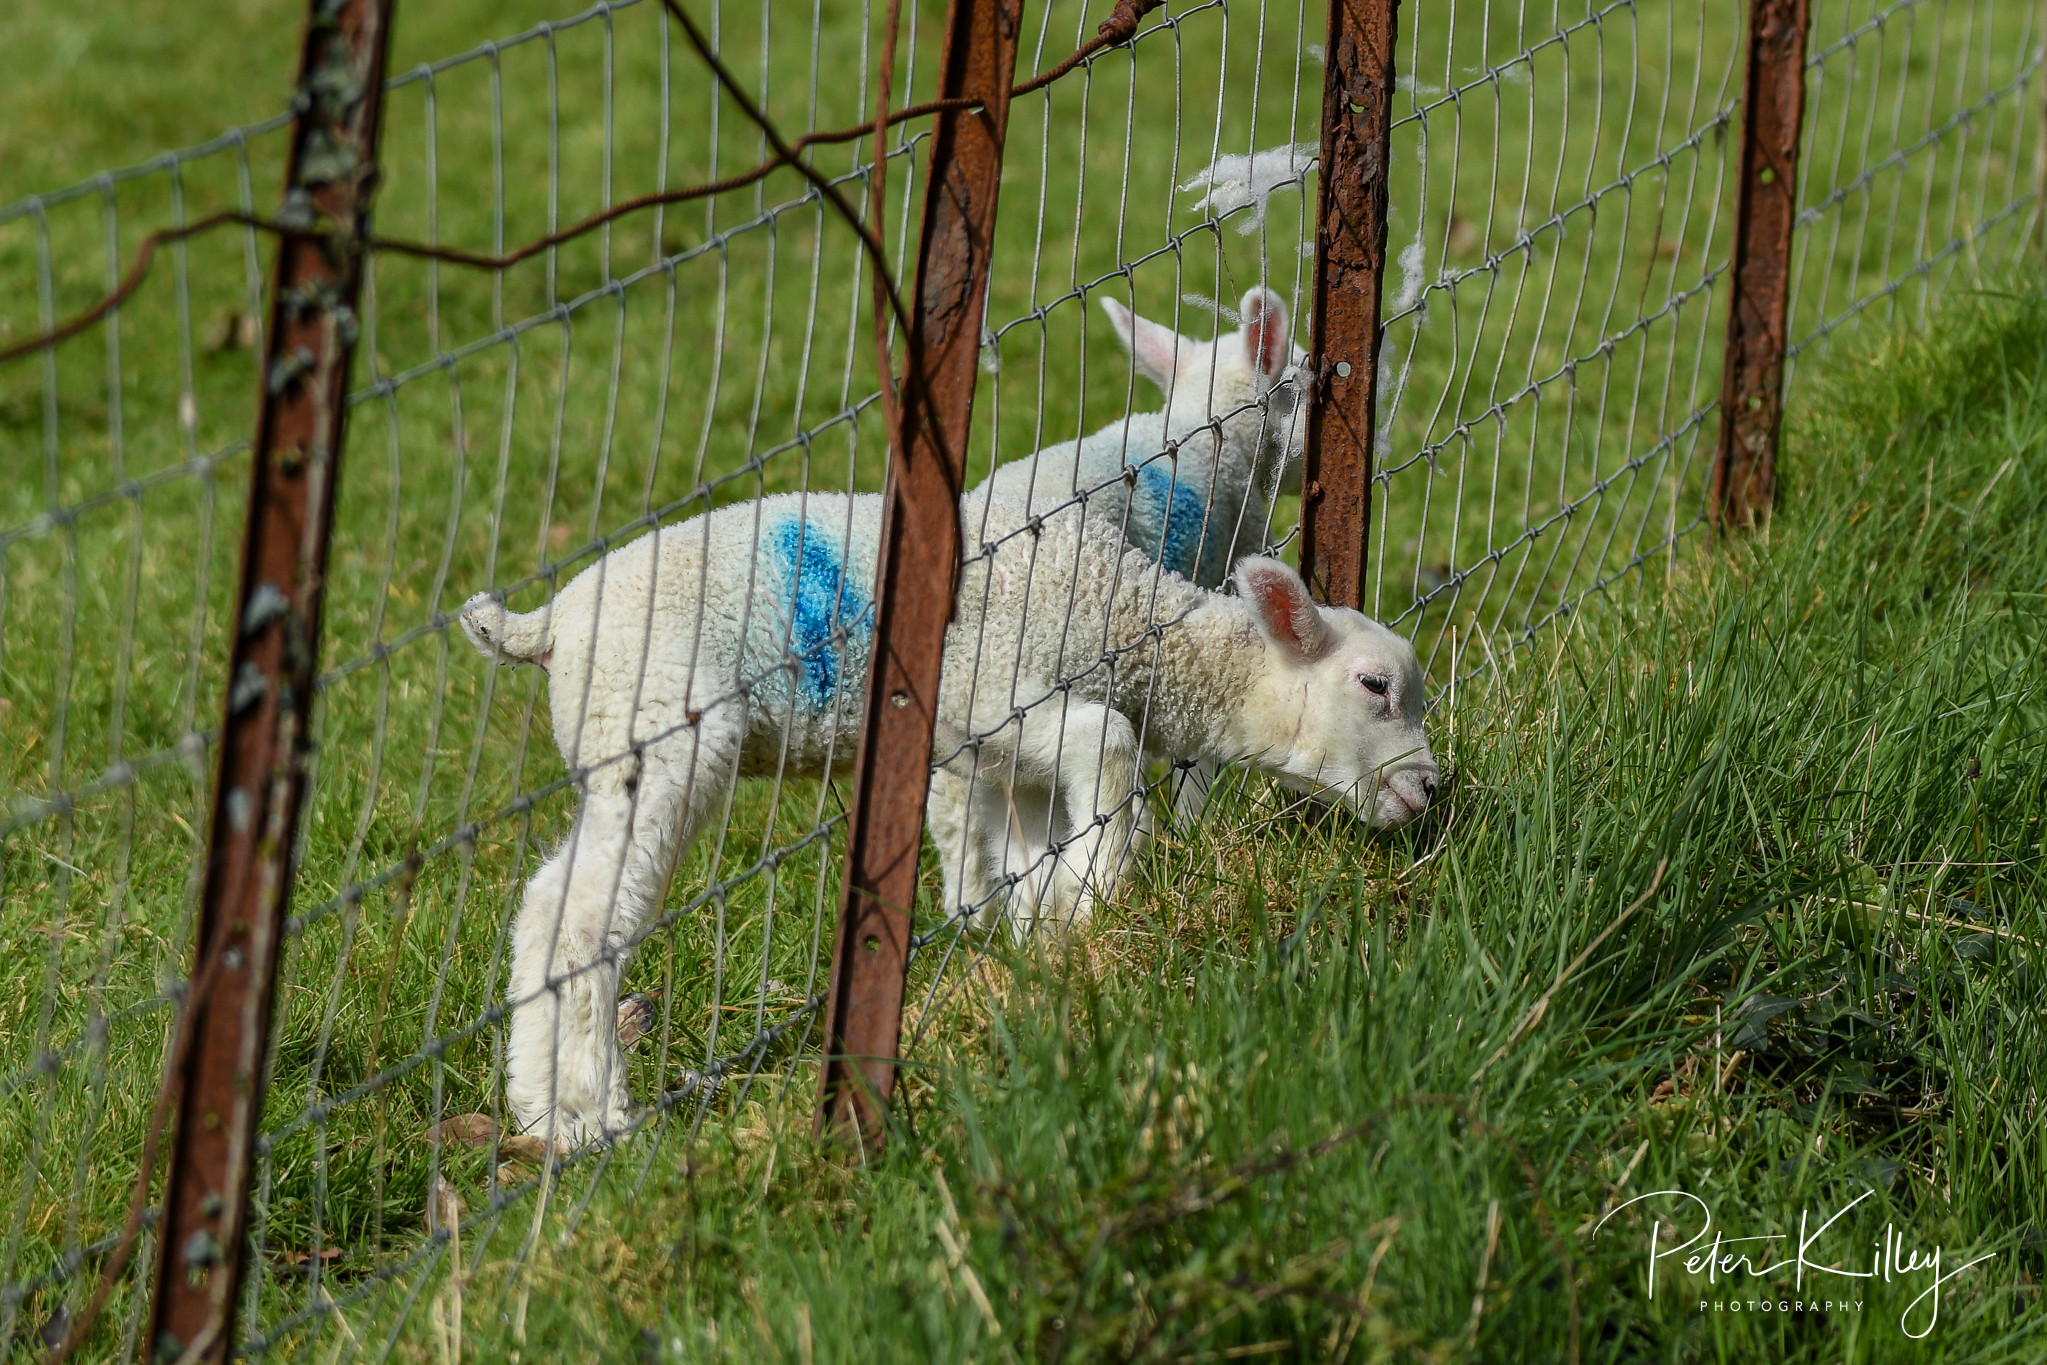 New Born Lambs © Peter Killey - www.manxscenes.com